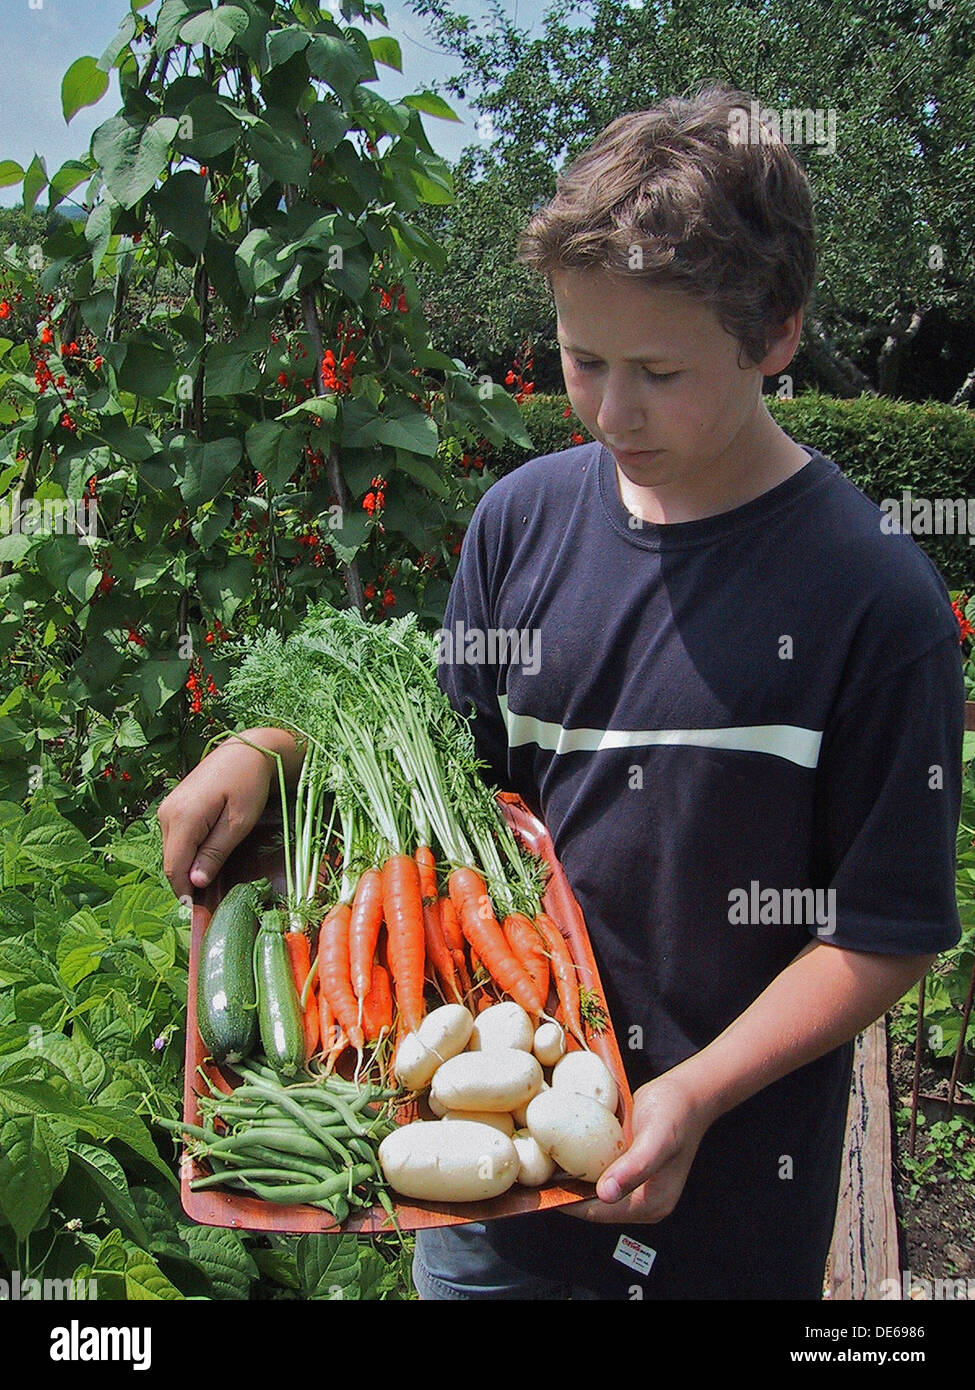 Harvesting fresh organic garden vegetables Stock Photo